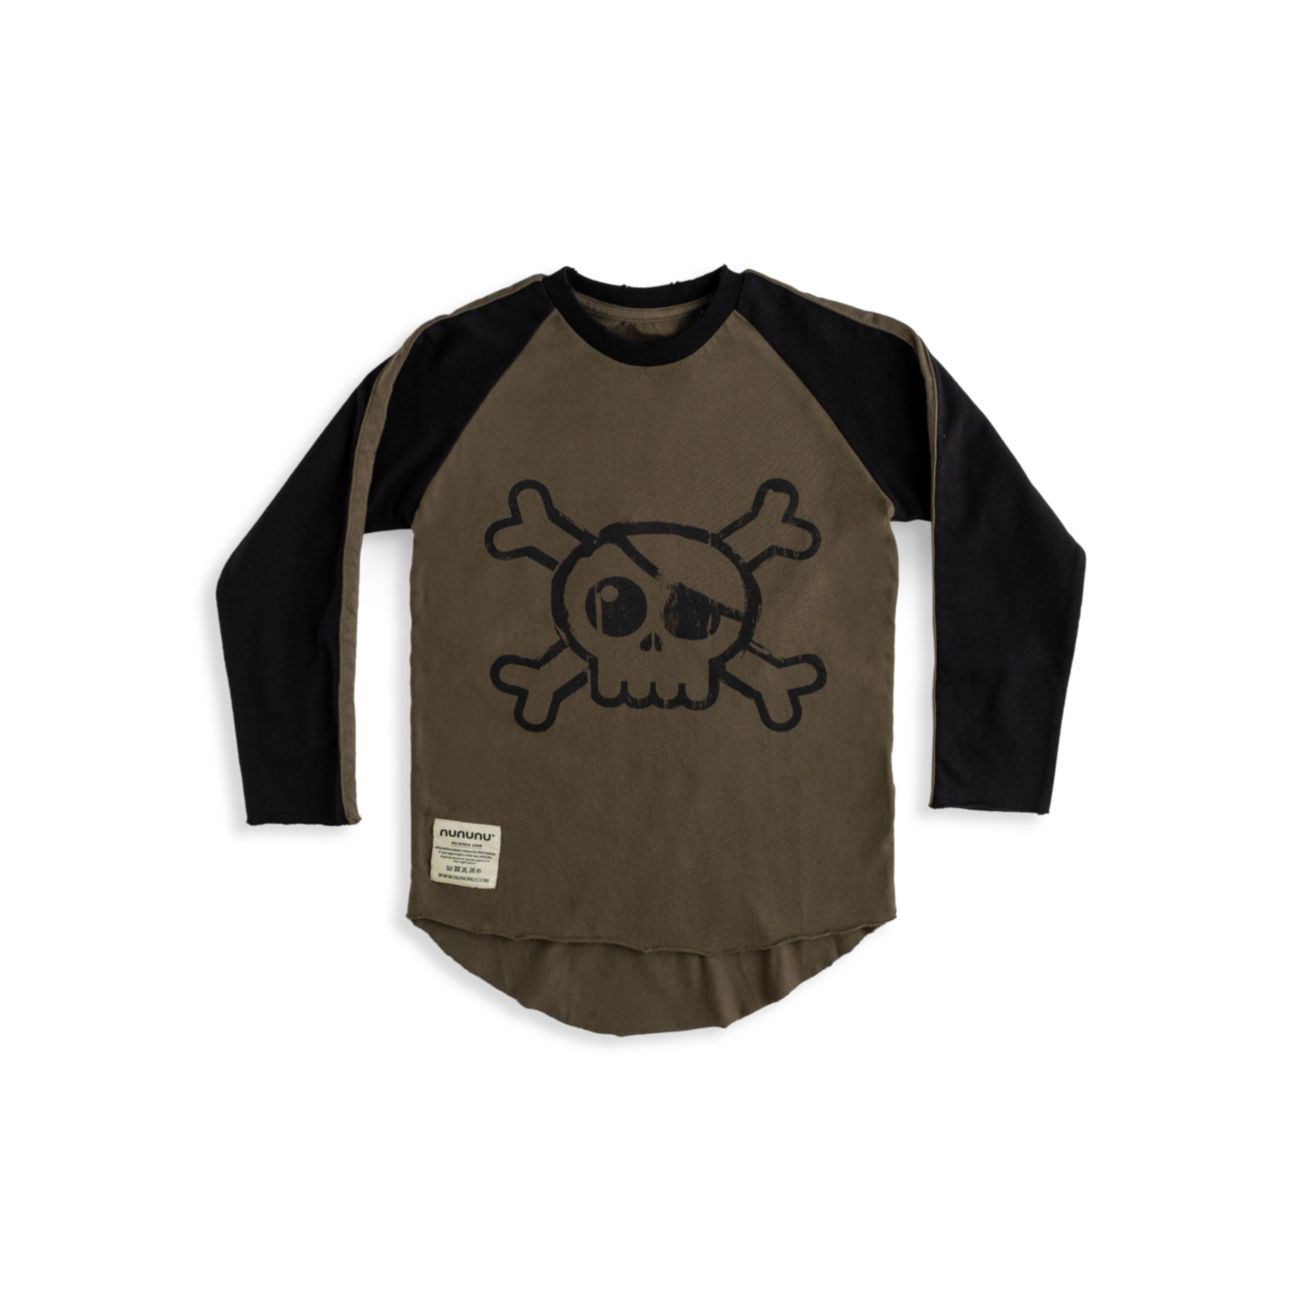 Little Boy's & amp; Рубашка для мальчиков с принтом черепа Nununu